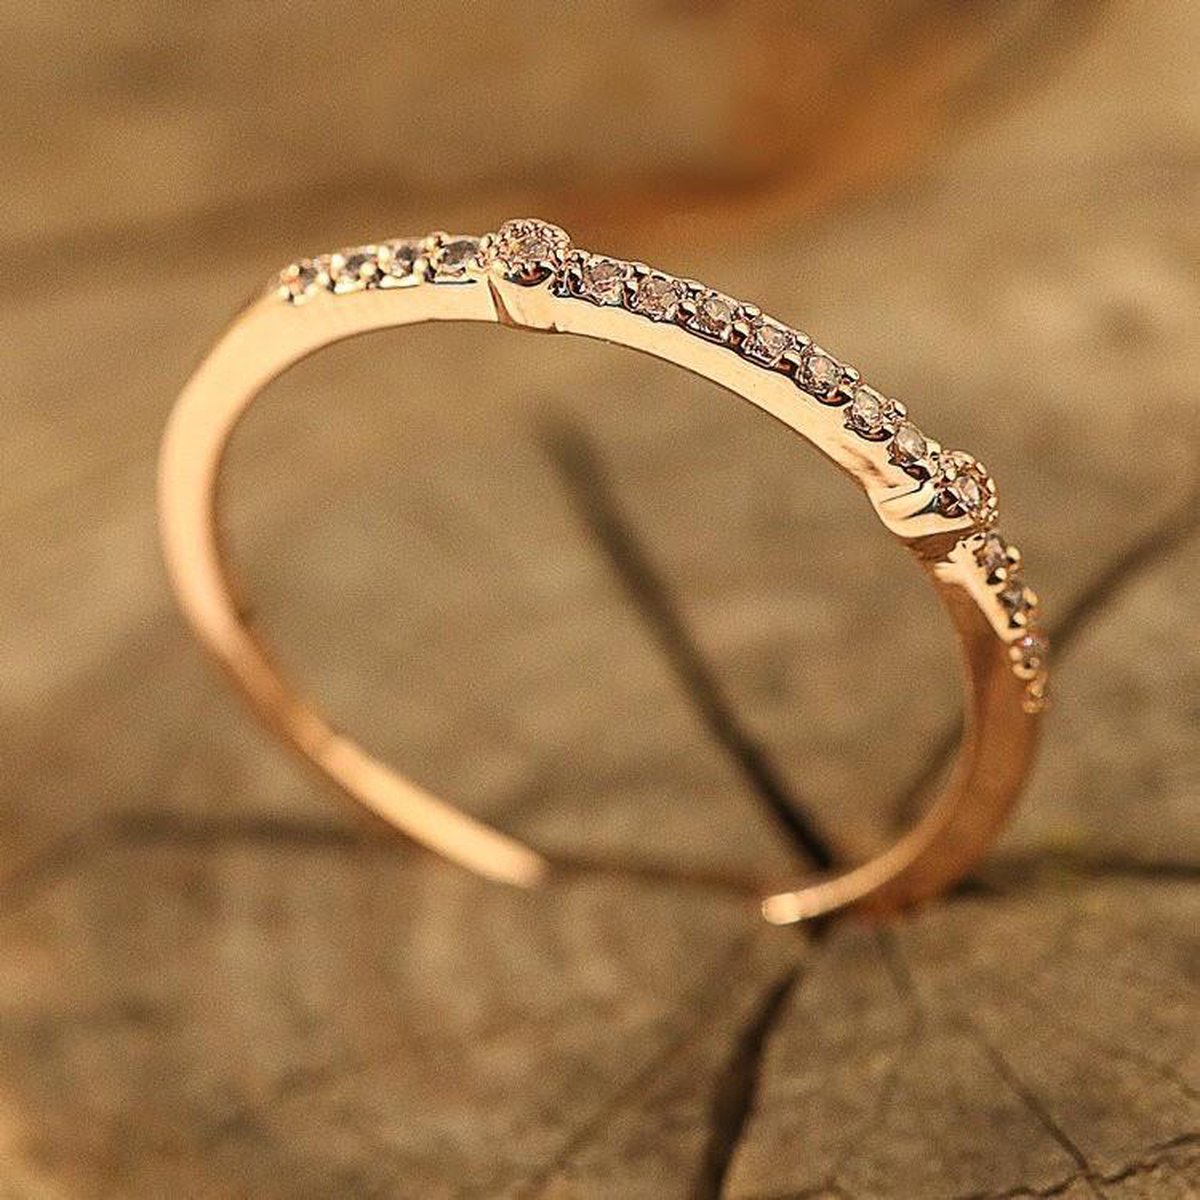 Fate Jewellery Ring FJ137 - 19mm - Roséverguld met zirkonia kristallen